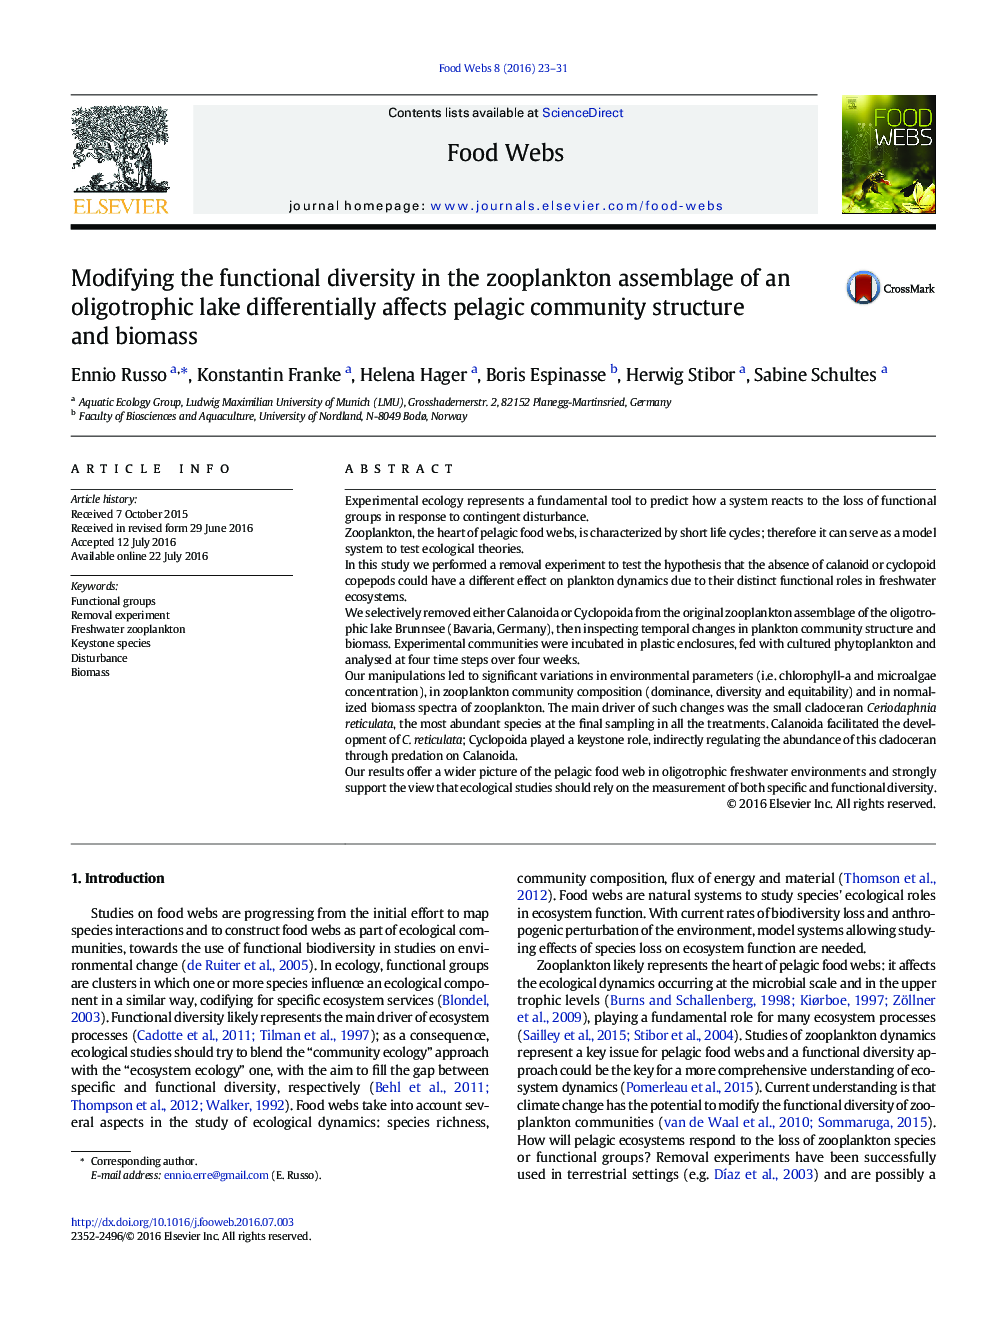 اصلاح تنوع عملکردی در جمع آوری زئوپلانکتون از دریاچه الیگوتروفی به طور متفاوتی بر ساختار جامعه پالایی و زیست توده تاثیر می گذارد 